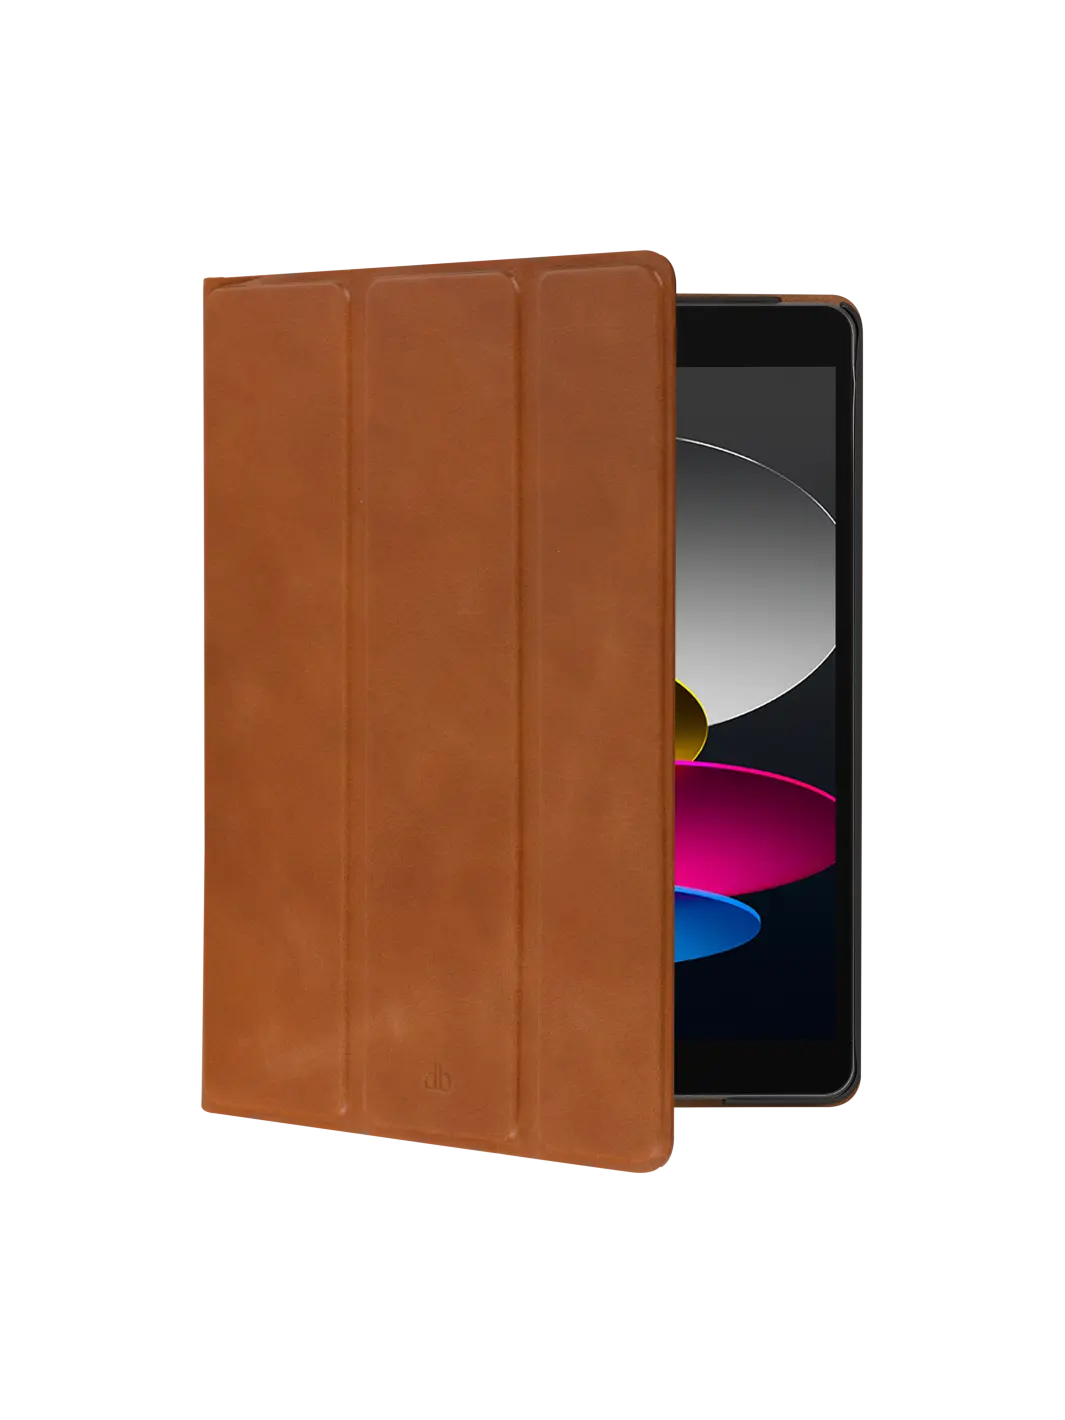 Risskov full-grain leather iPad case#color_tan